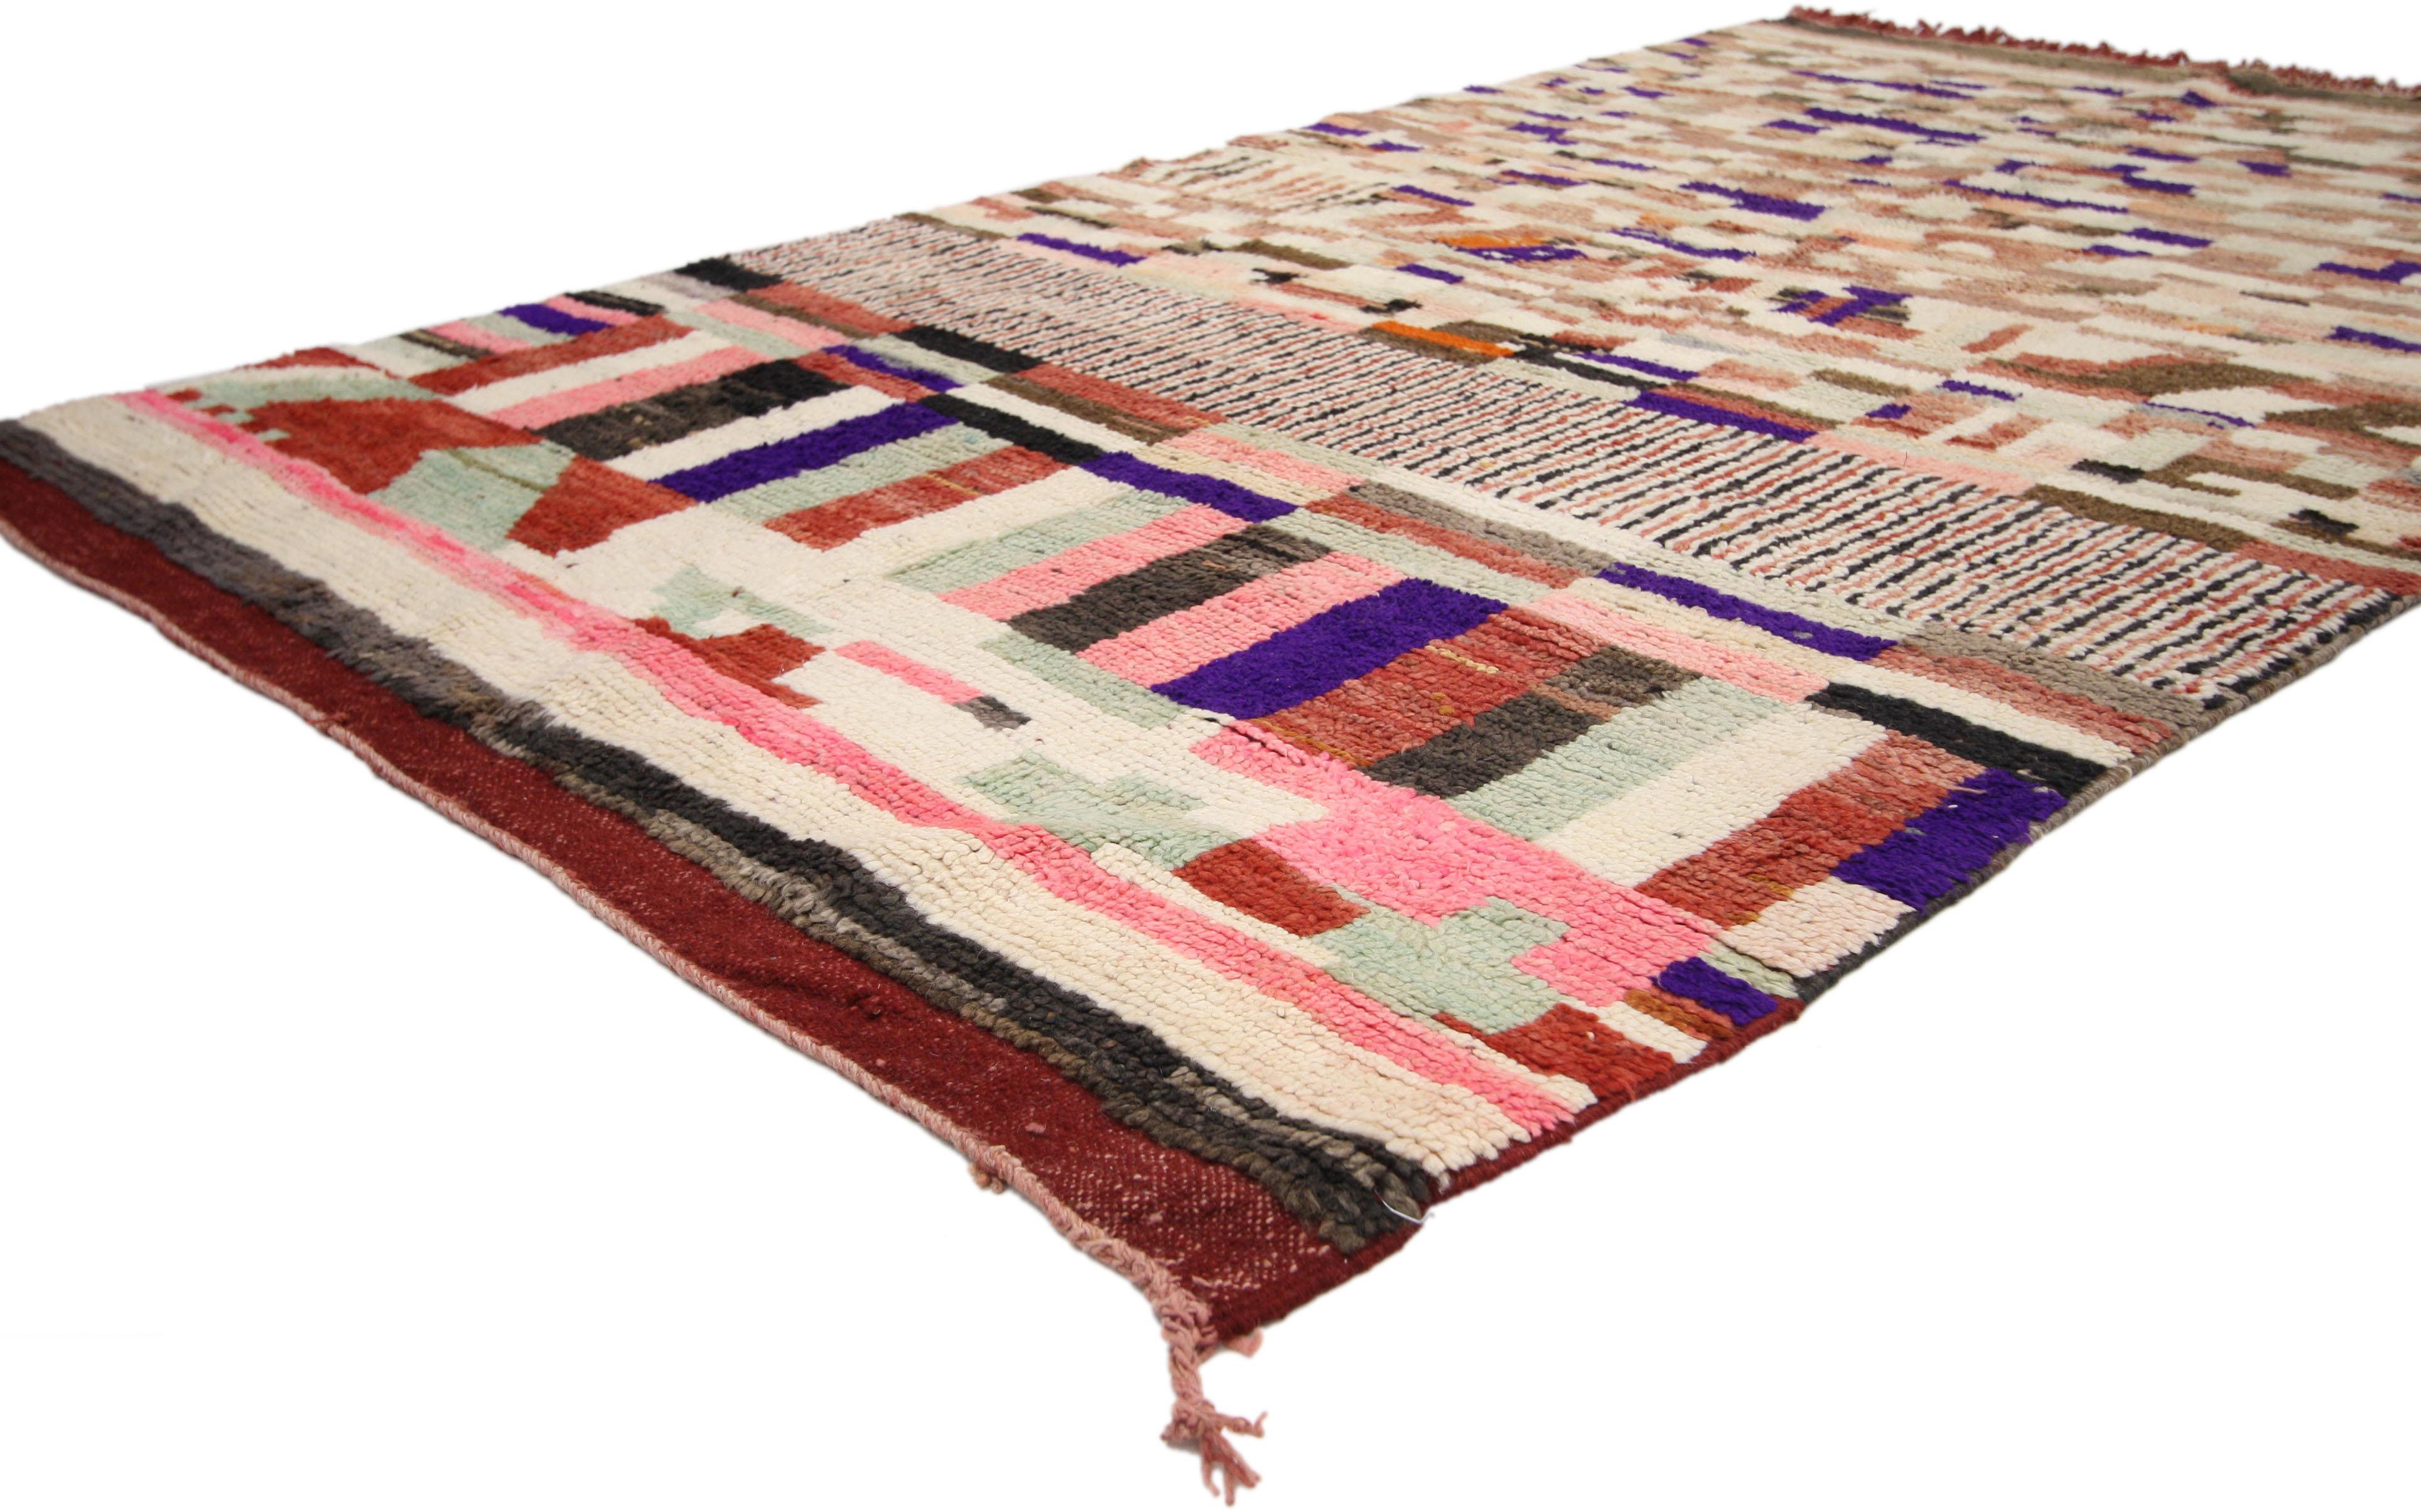 74827, Marokkanischer Berberteppich Rehamna mit böhmischem, abstraktem expressionistischem Stil. Dieser marokkanische Rehamna-Teppich aus handgeknüpfter Wolle zeichnet sich durch sein asymmetrisches Design und seinen böhmischen, expressionistischen